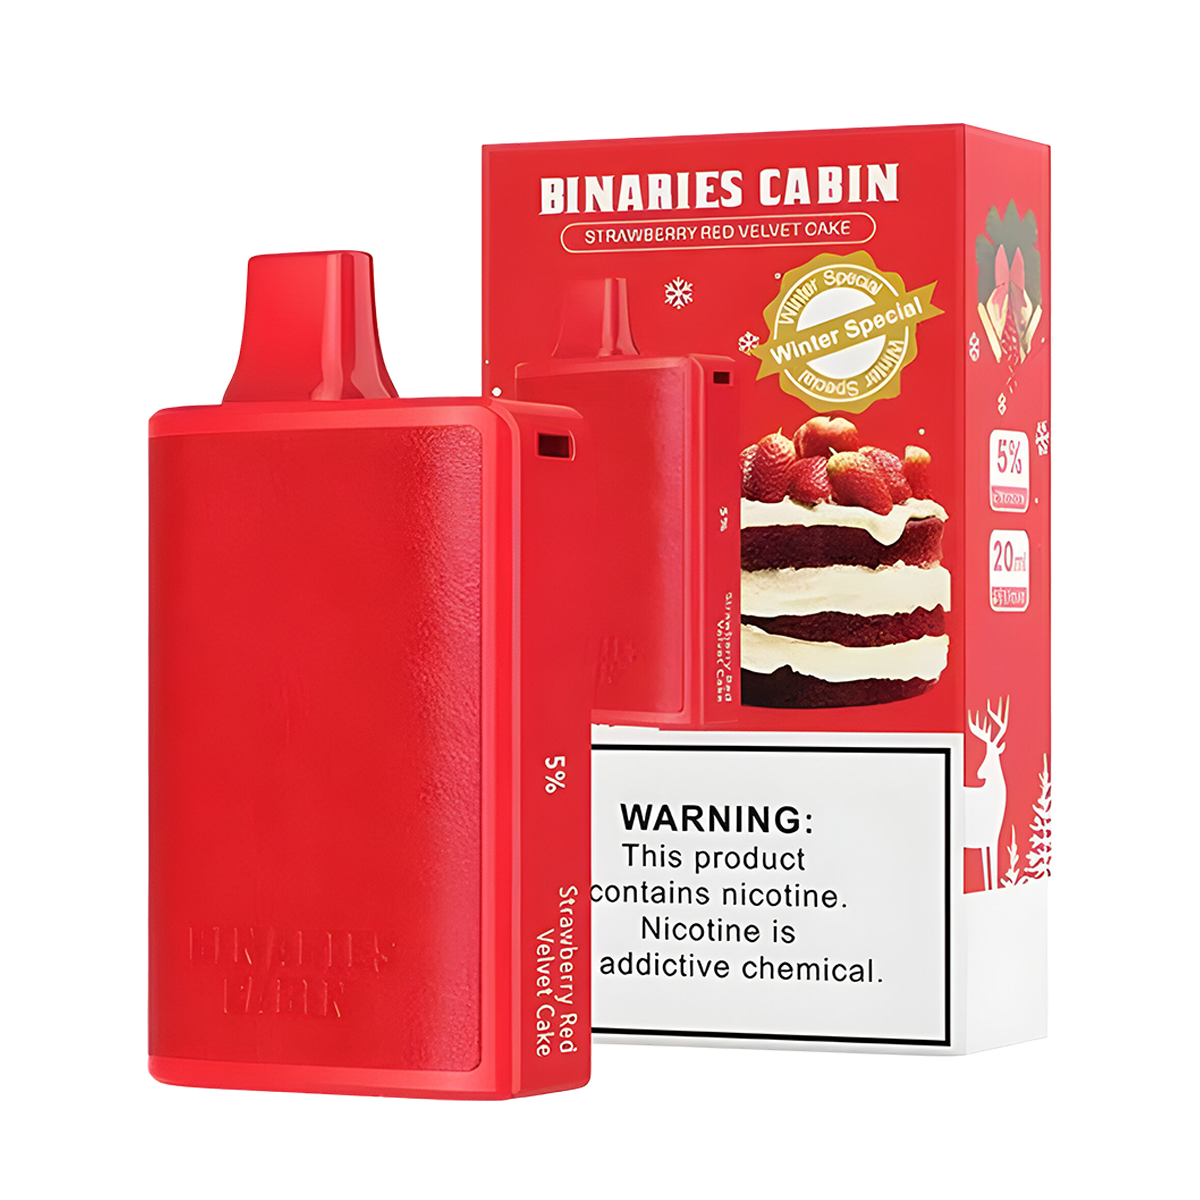 HorizonTech Binaries Cabin 10000 Disposable Vape Strawberry Red Velvet Cake 50 Mg 